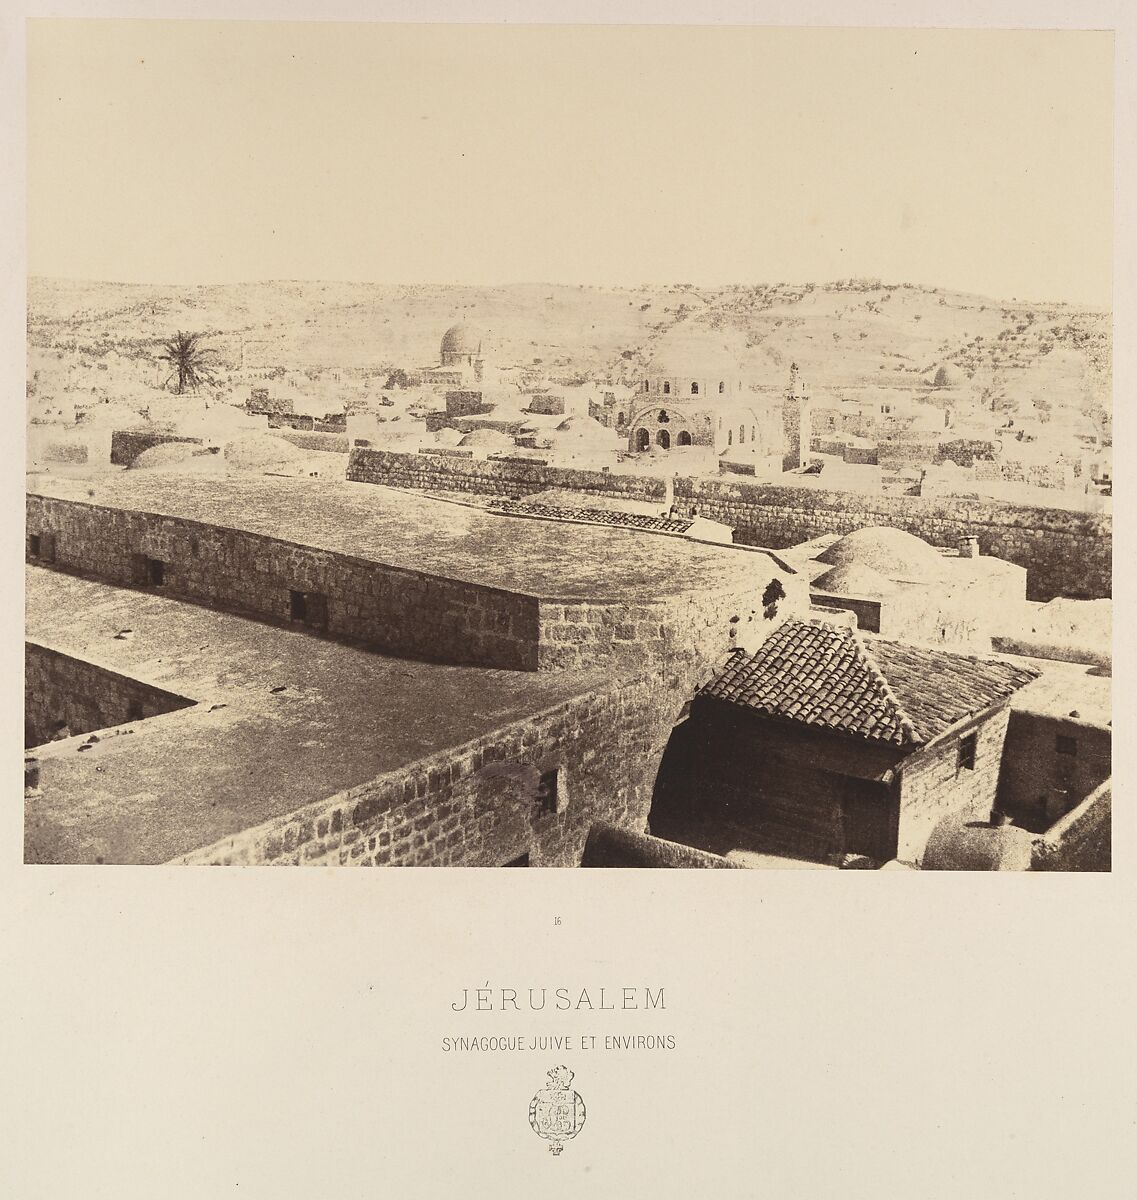 Jérusalem. Synagogue juive et environs, Louis de Clercq (French, 1837–1901), Albumen silver print from paper negative 